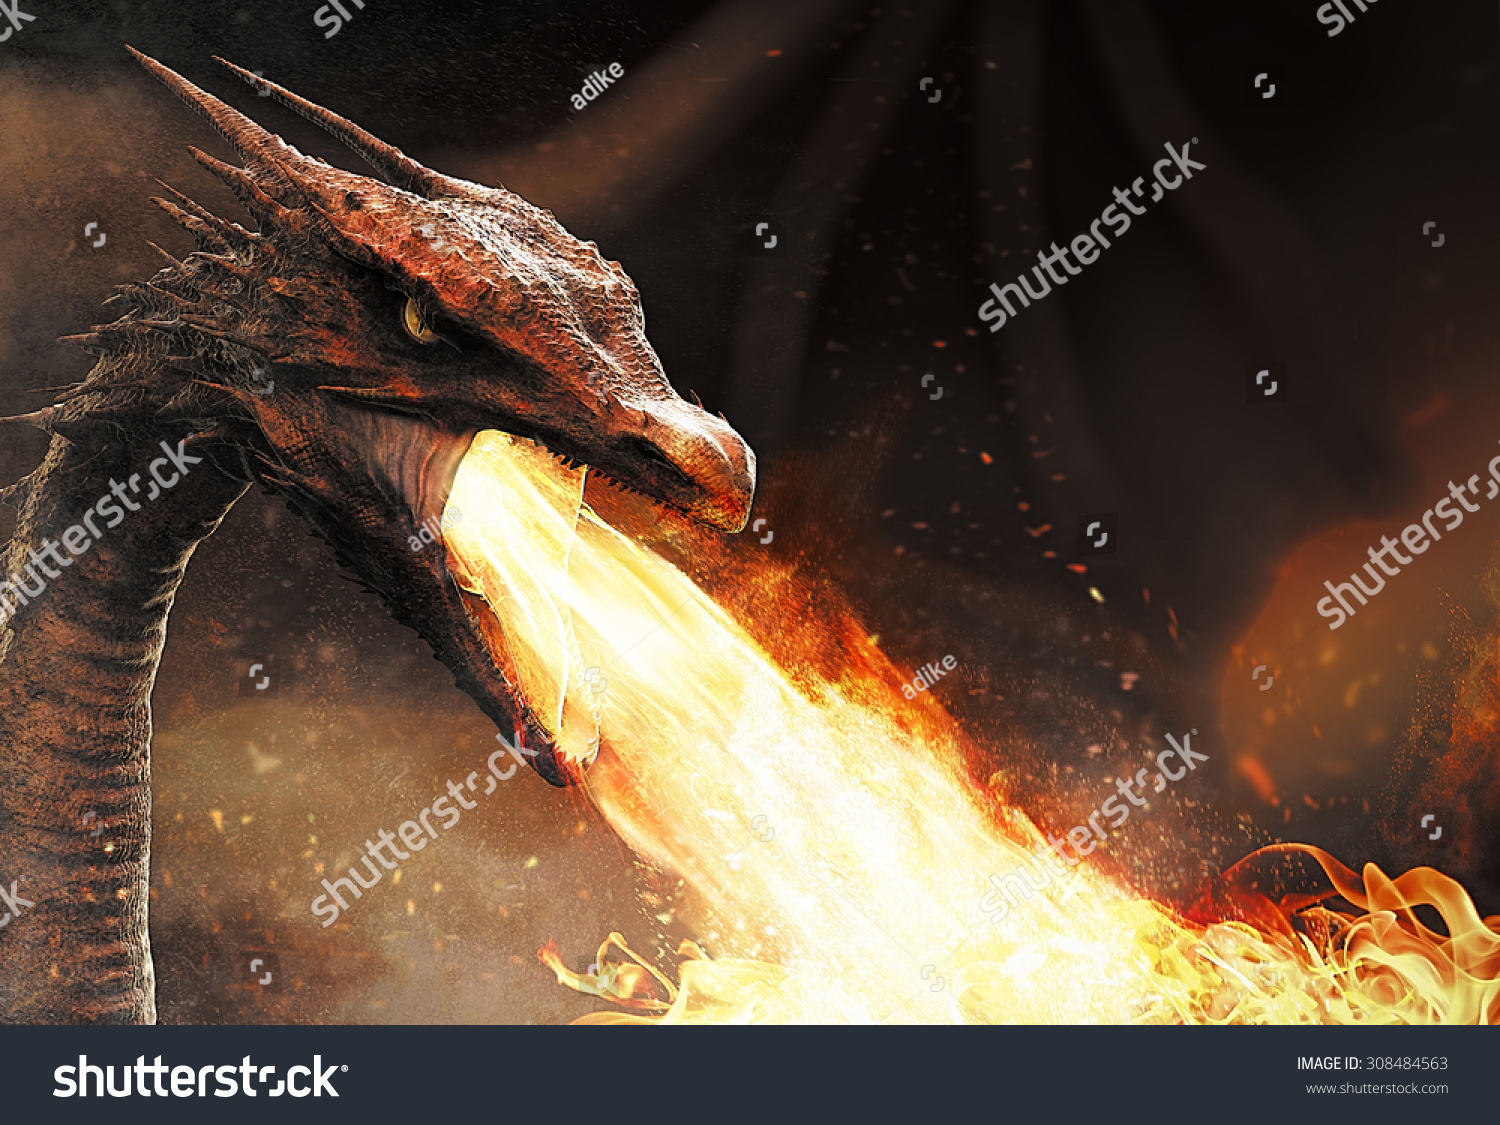 火を吐くドラゴン のイラスト素材